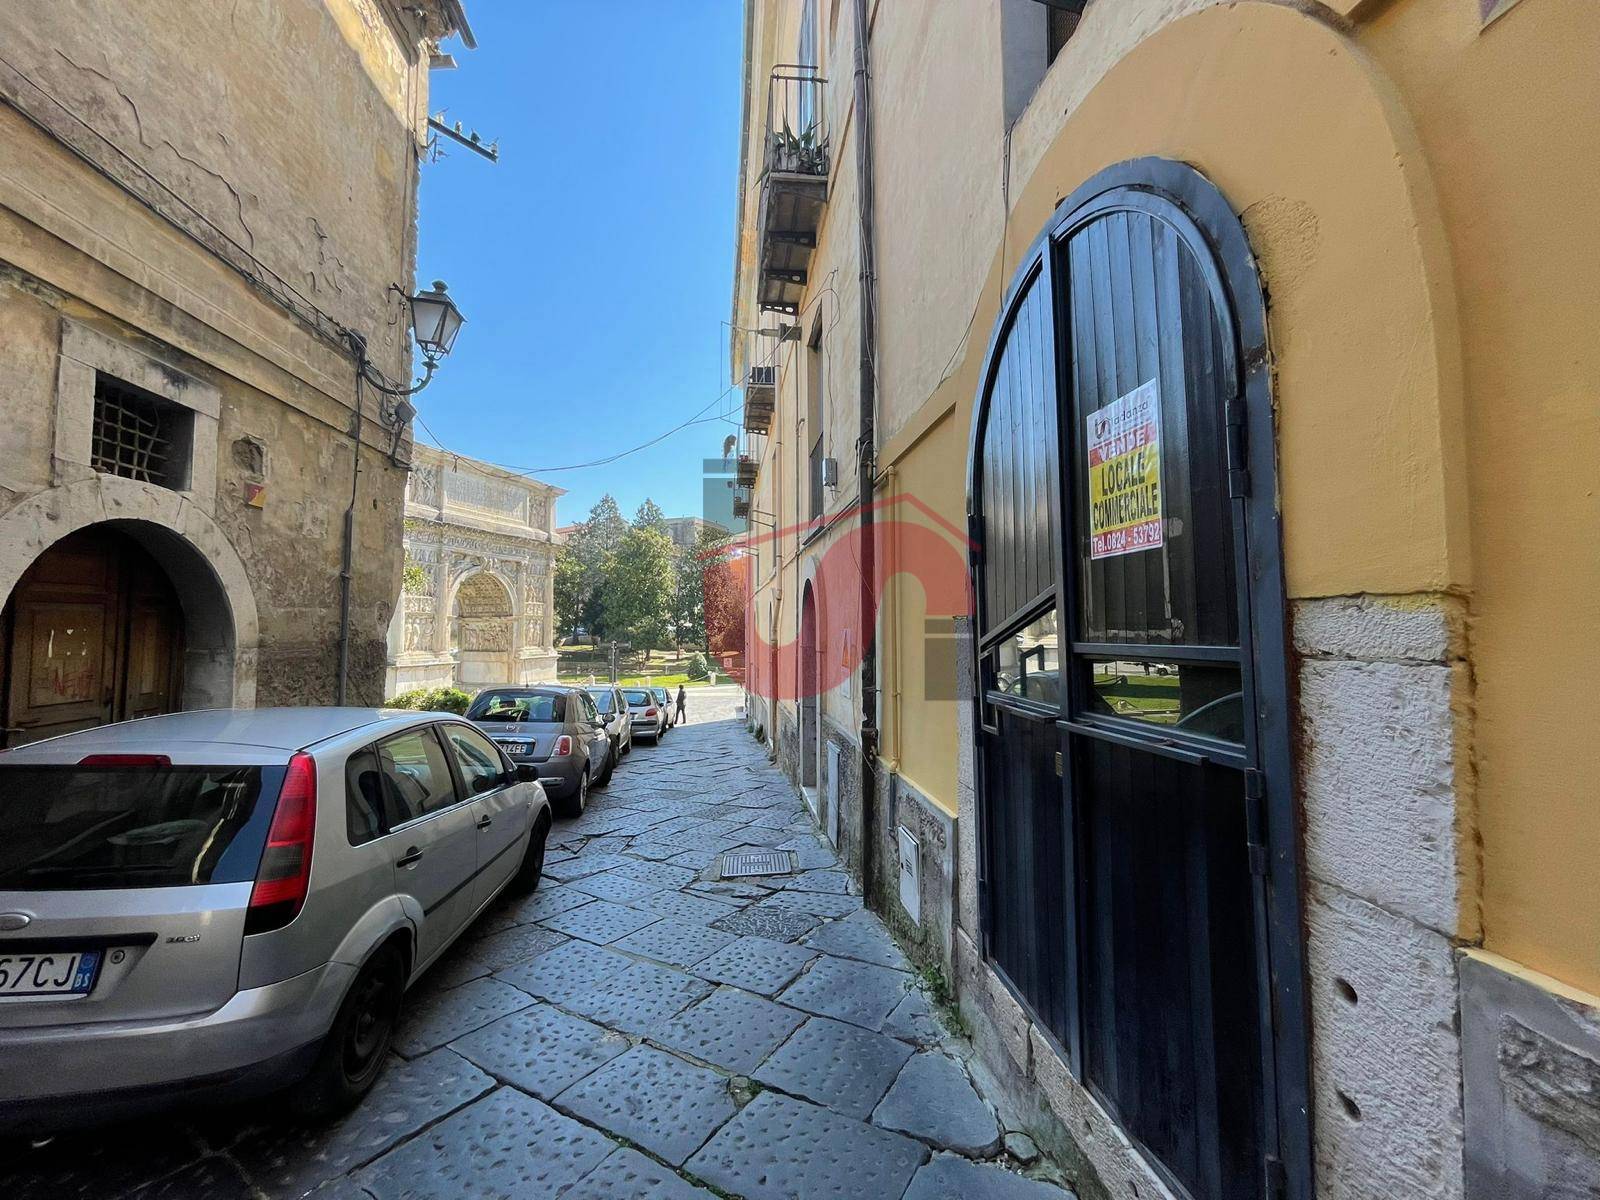 Locale commerciale in vendita, Benevento centro storico